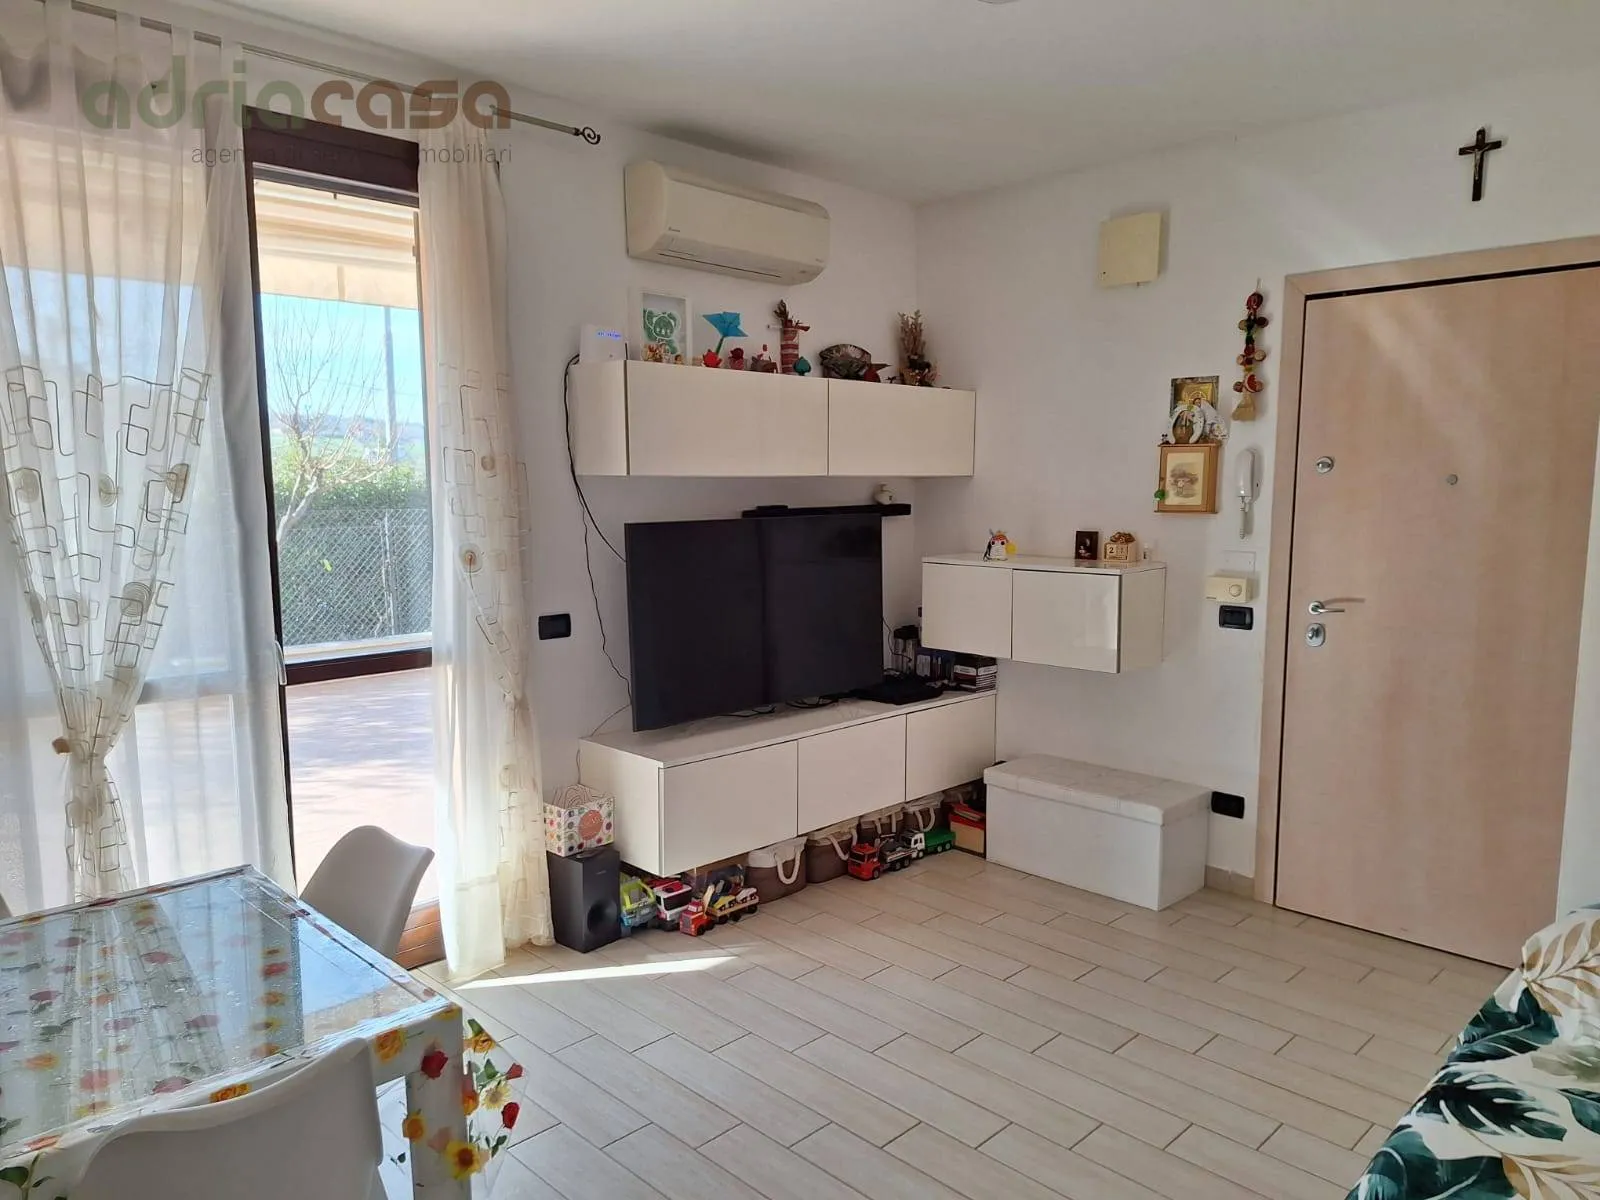 Immagine per Appartamento in vendita a Coriano Via Pian della Pieve